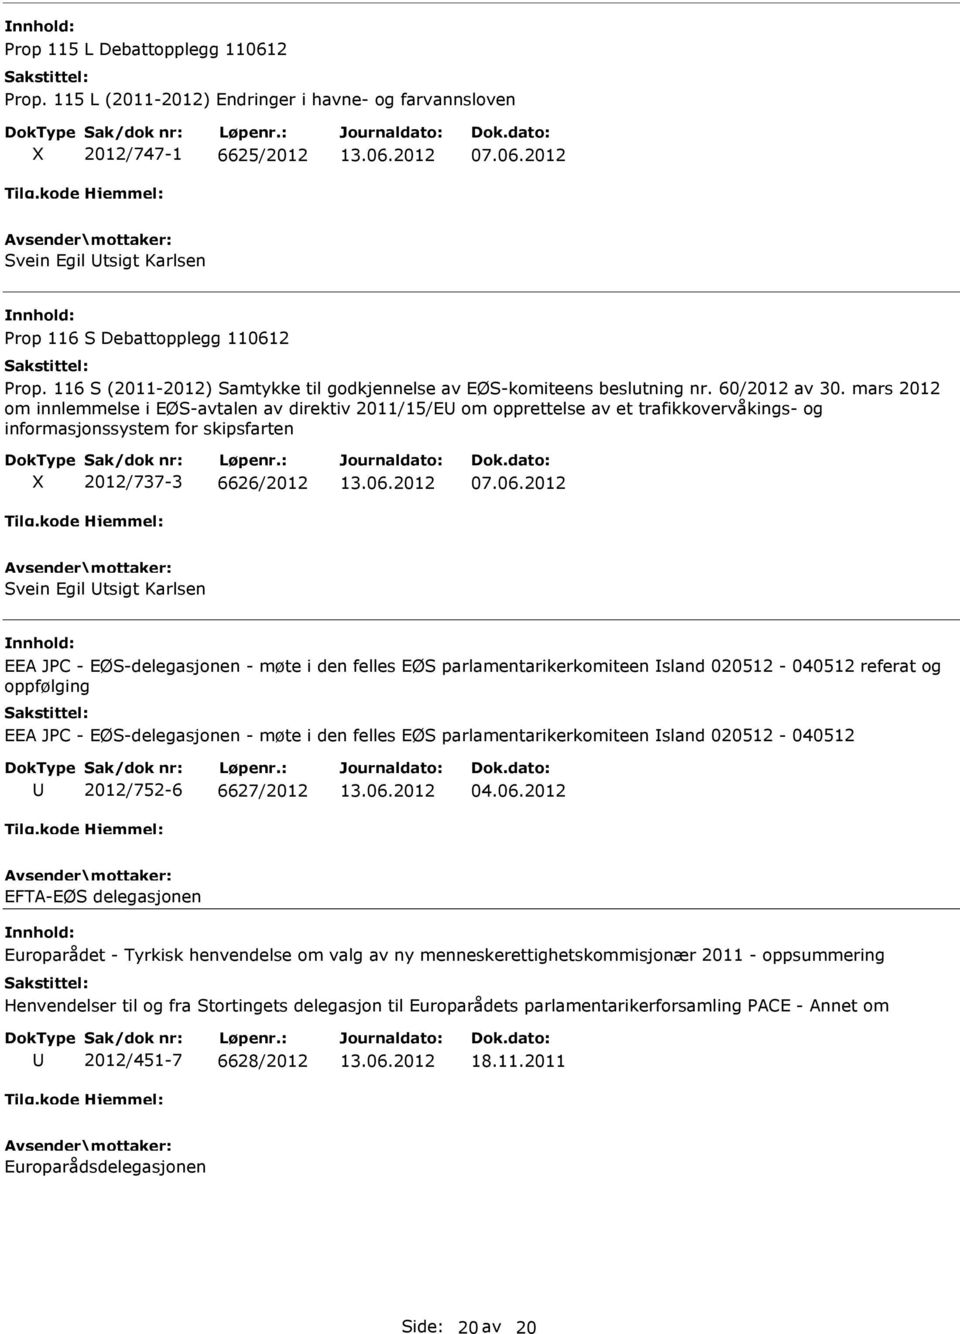 mars 2012 om innlemmelse i EØS-avtalen av direktiv 2011/15/E om opprettelse av et trafikkovervåkings- og informasjonssystem for skipsfarten 2012/737-3 6626/2012 07.06.